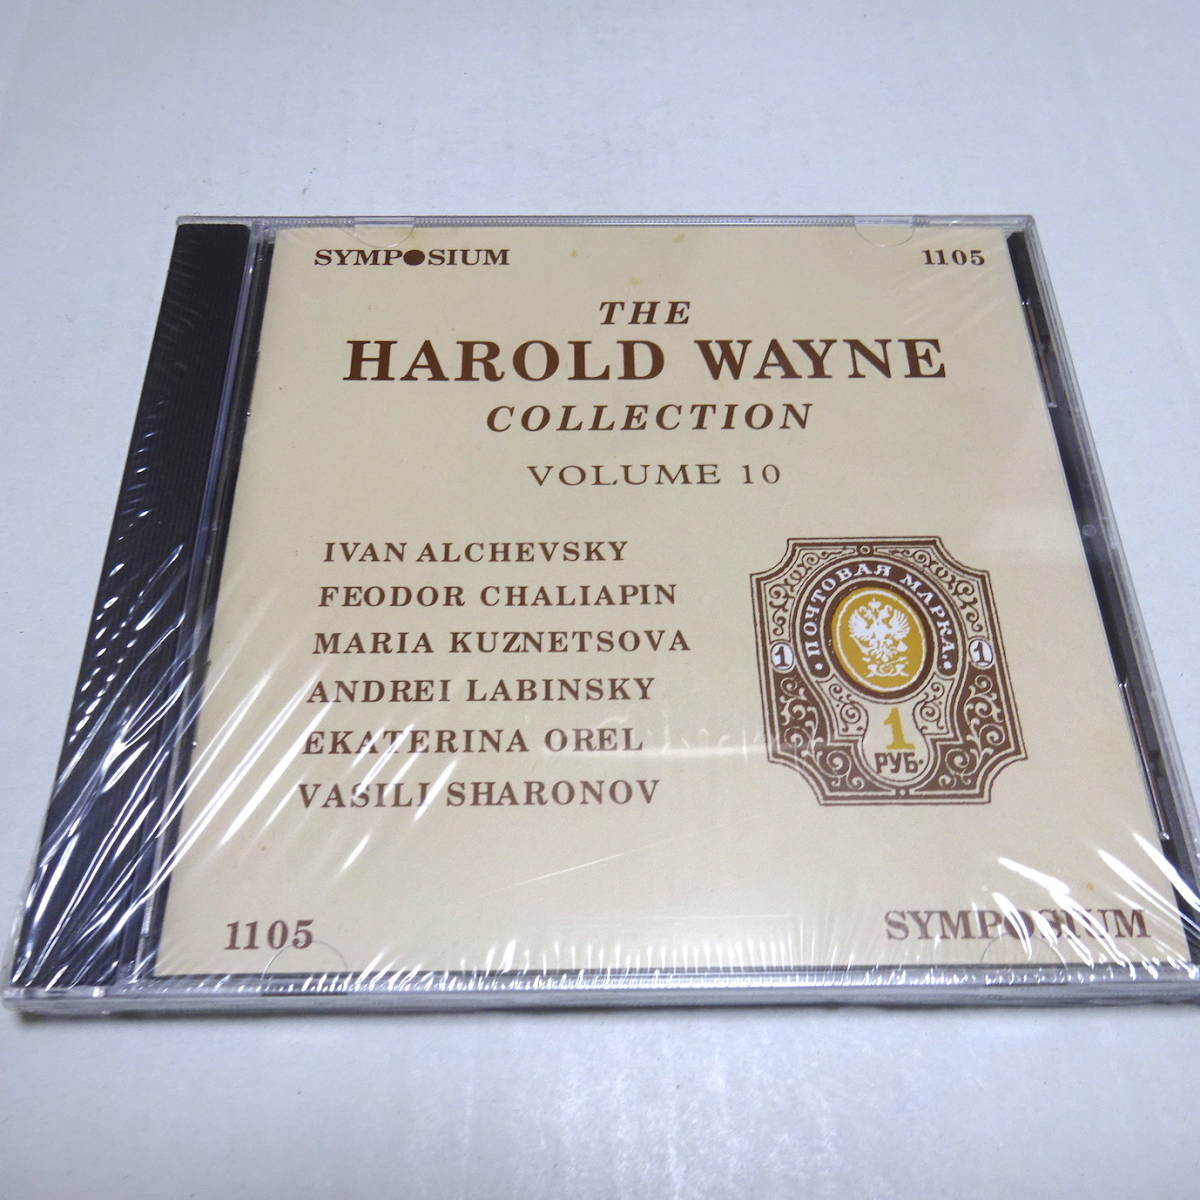 未開封CD/英Symposium「The Harold Wayne Collection 10(オペラ・アリア集)」シャリアピン/クスネツォヴァ/ラビンスキー/オーレル/SYMP1105_画像1